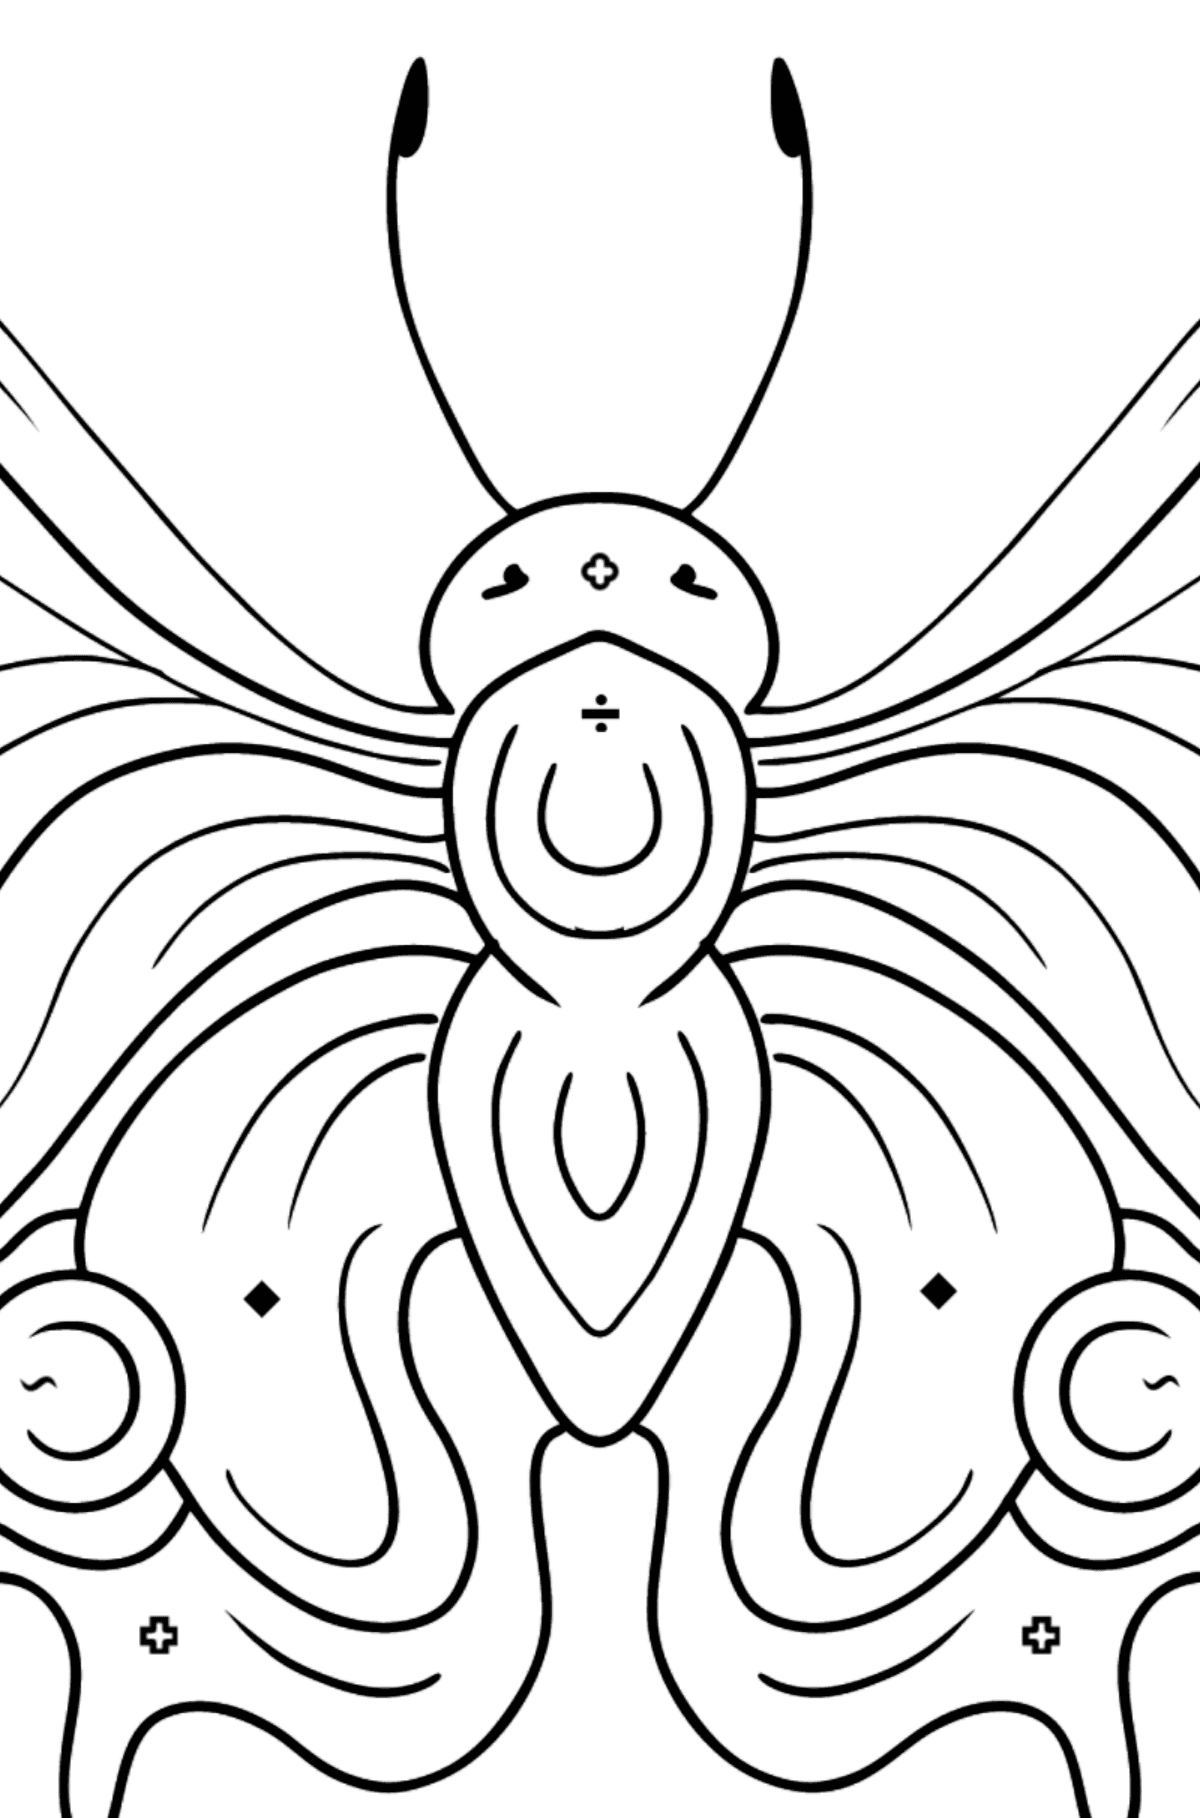 Kolorowanka Paw motyl - Kolorowanie według symboli i figur geometrycznych dla dzieci